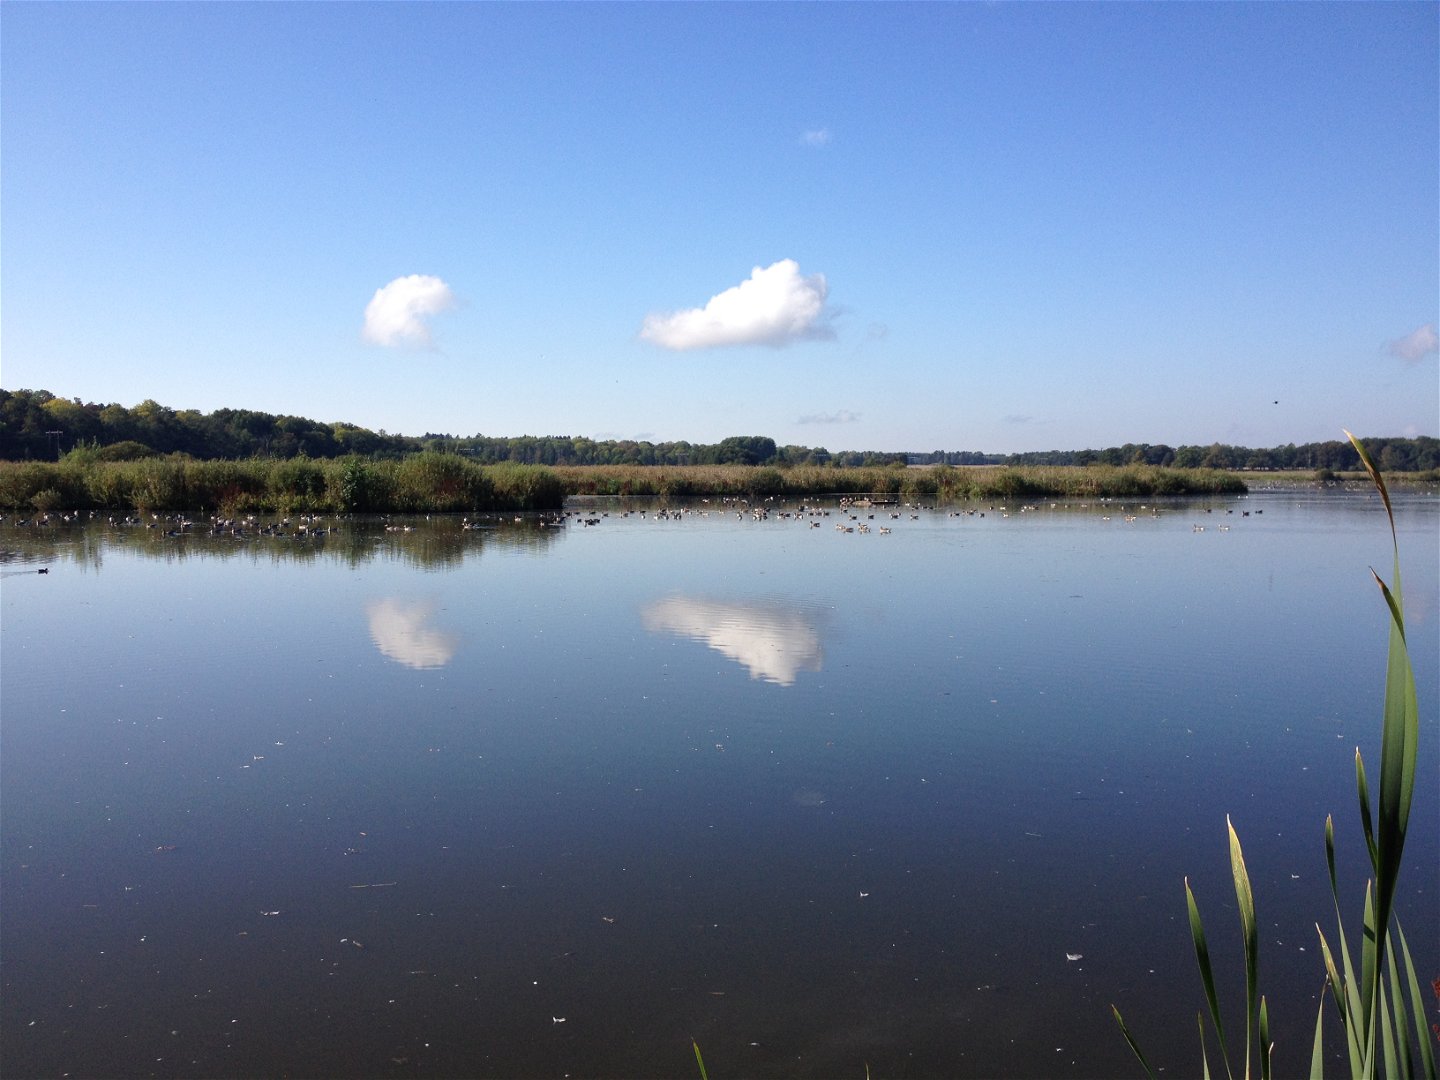 En spegelblank sjö med många fåglar och buskar längs strandlinjen.